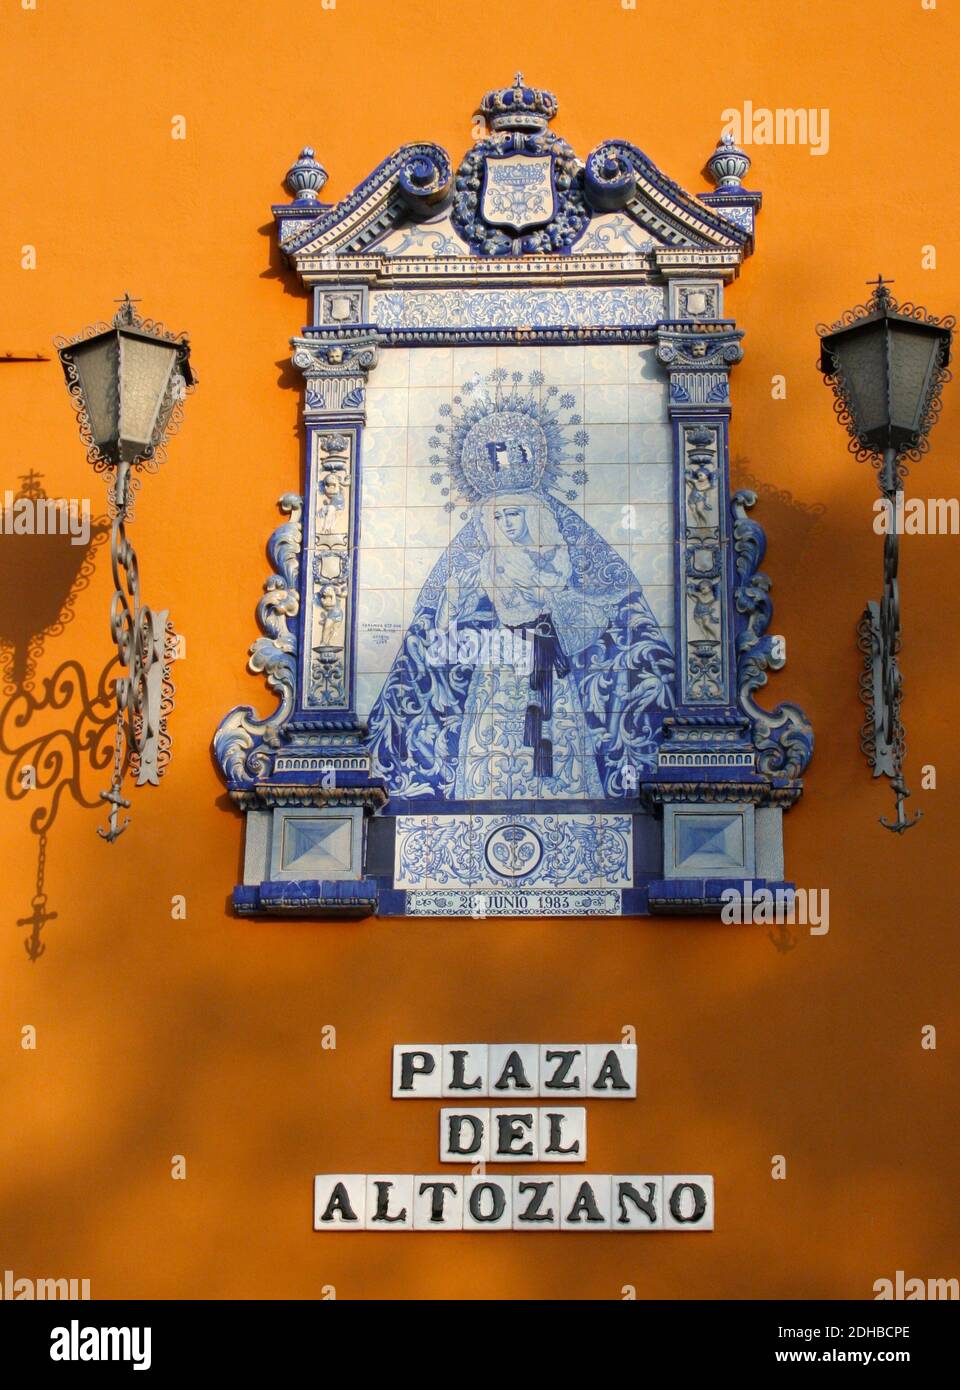 Plaza de Altozano : panneau de rue en carrelage bleu et blanc Contre un mur peint orange avec des feux de rue à Triana Séville Espagne avril 2014 Banque D'Images